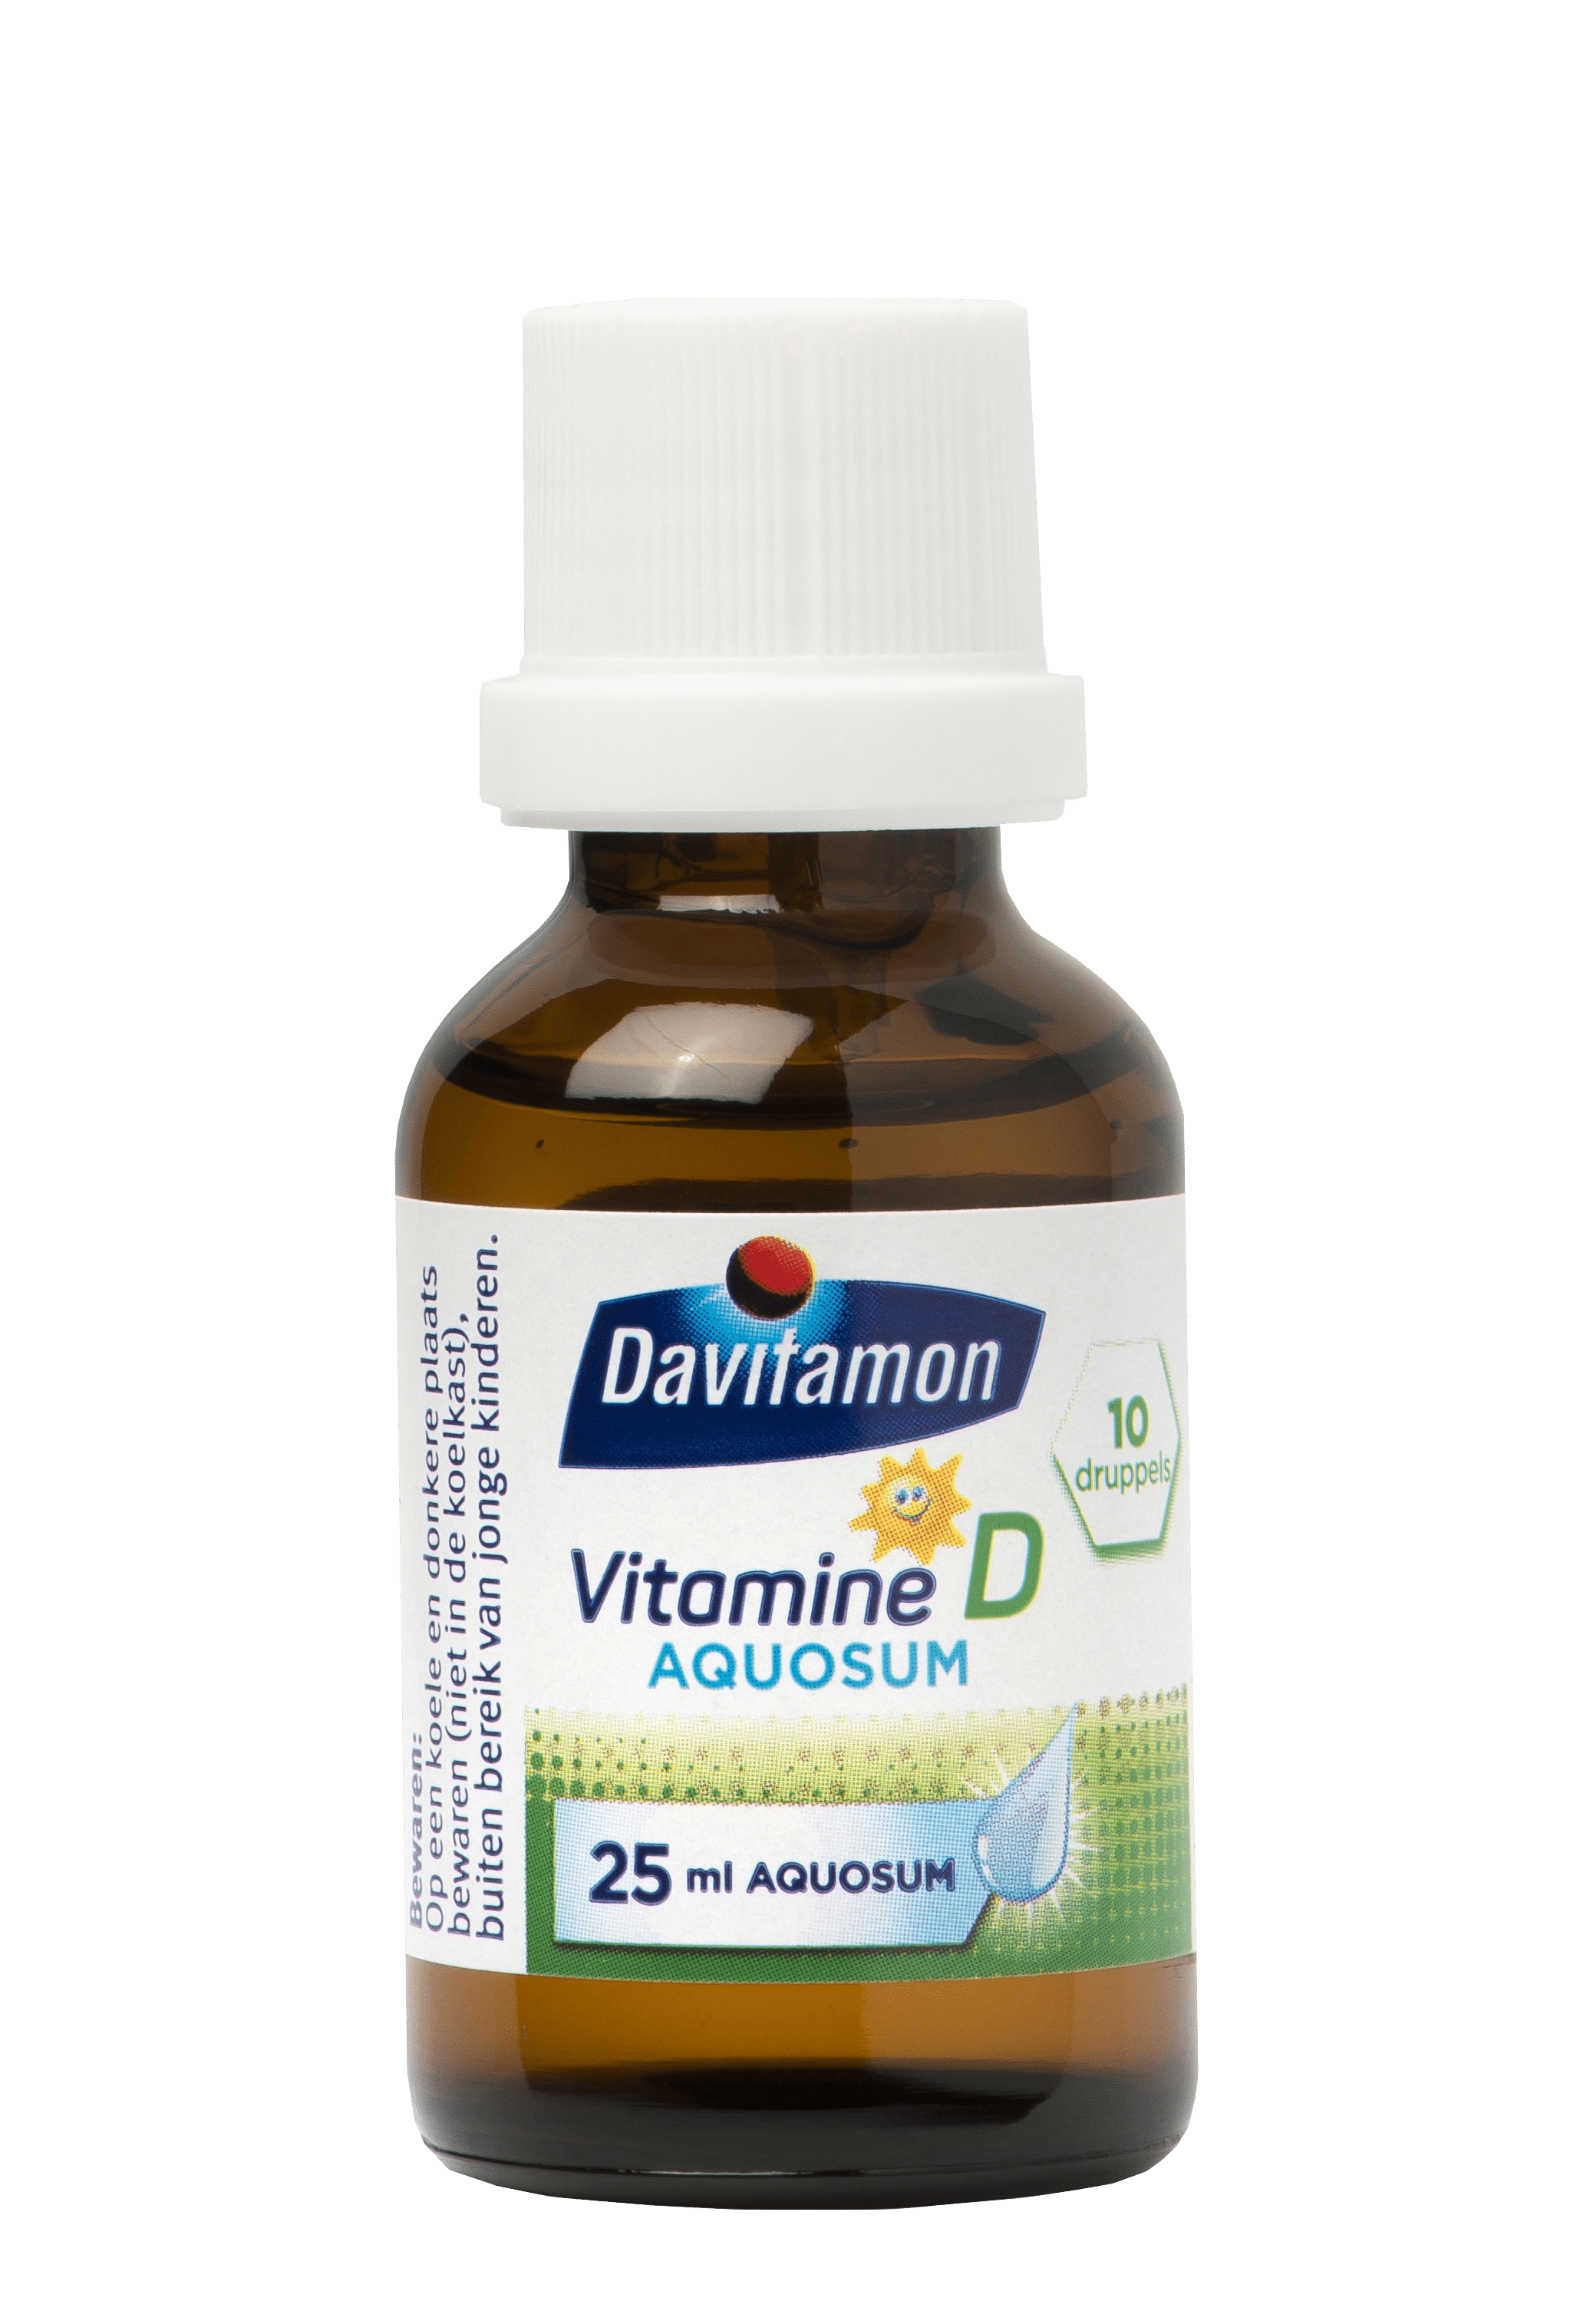 Davitamon Vitamine D Aquosum Druppels Product